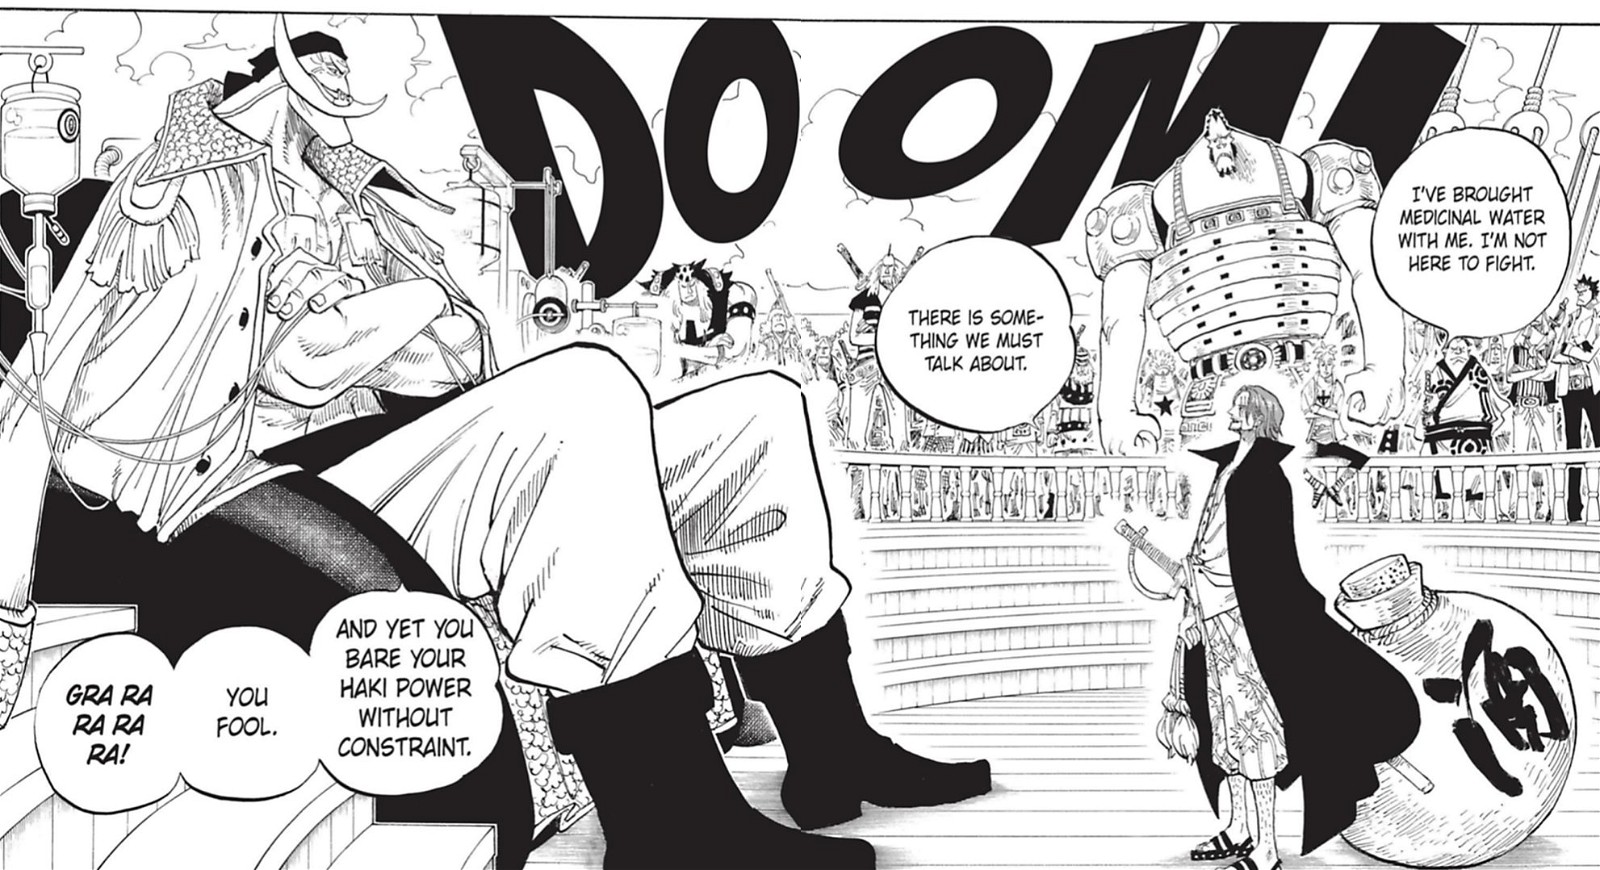 One Piece: Раскрыл ли Белоус истинную личность Шанкса во время их первой встречи, которую пропустило большинство фанатов? – объяснил